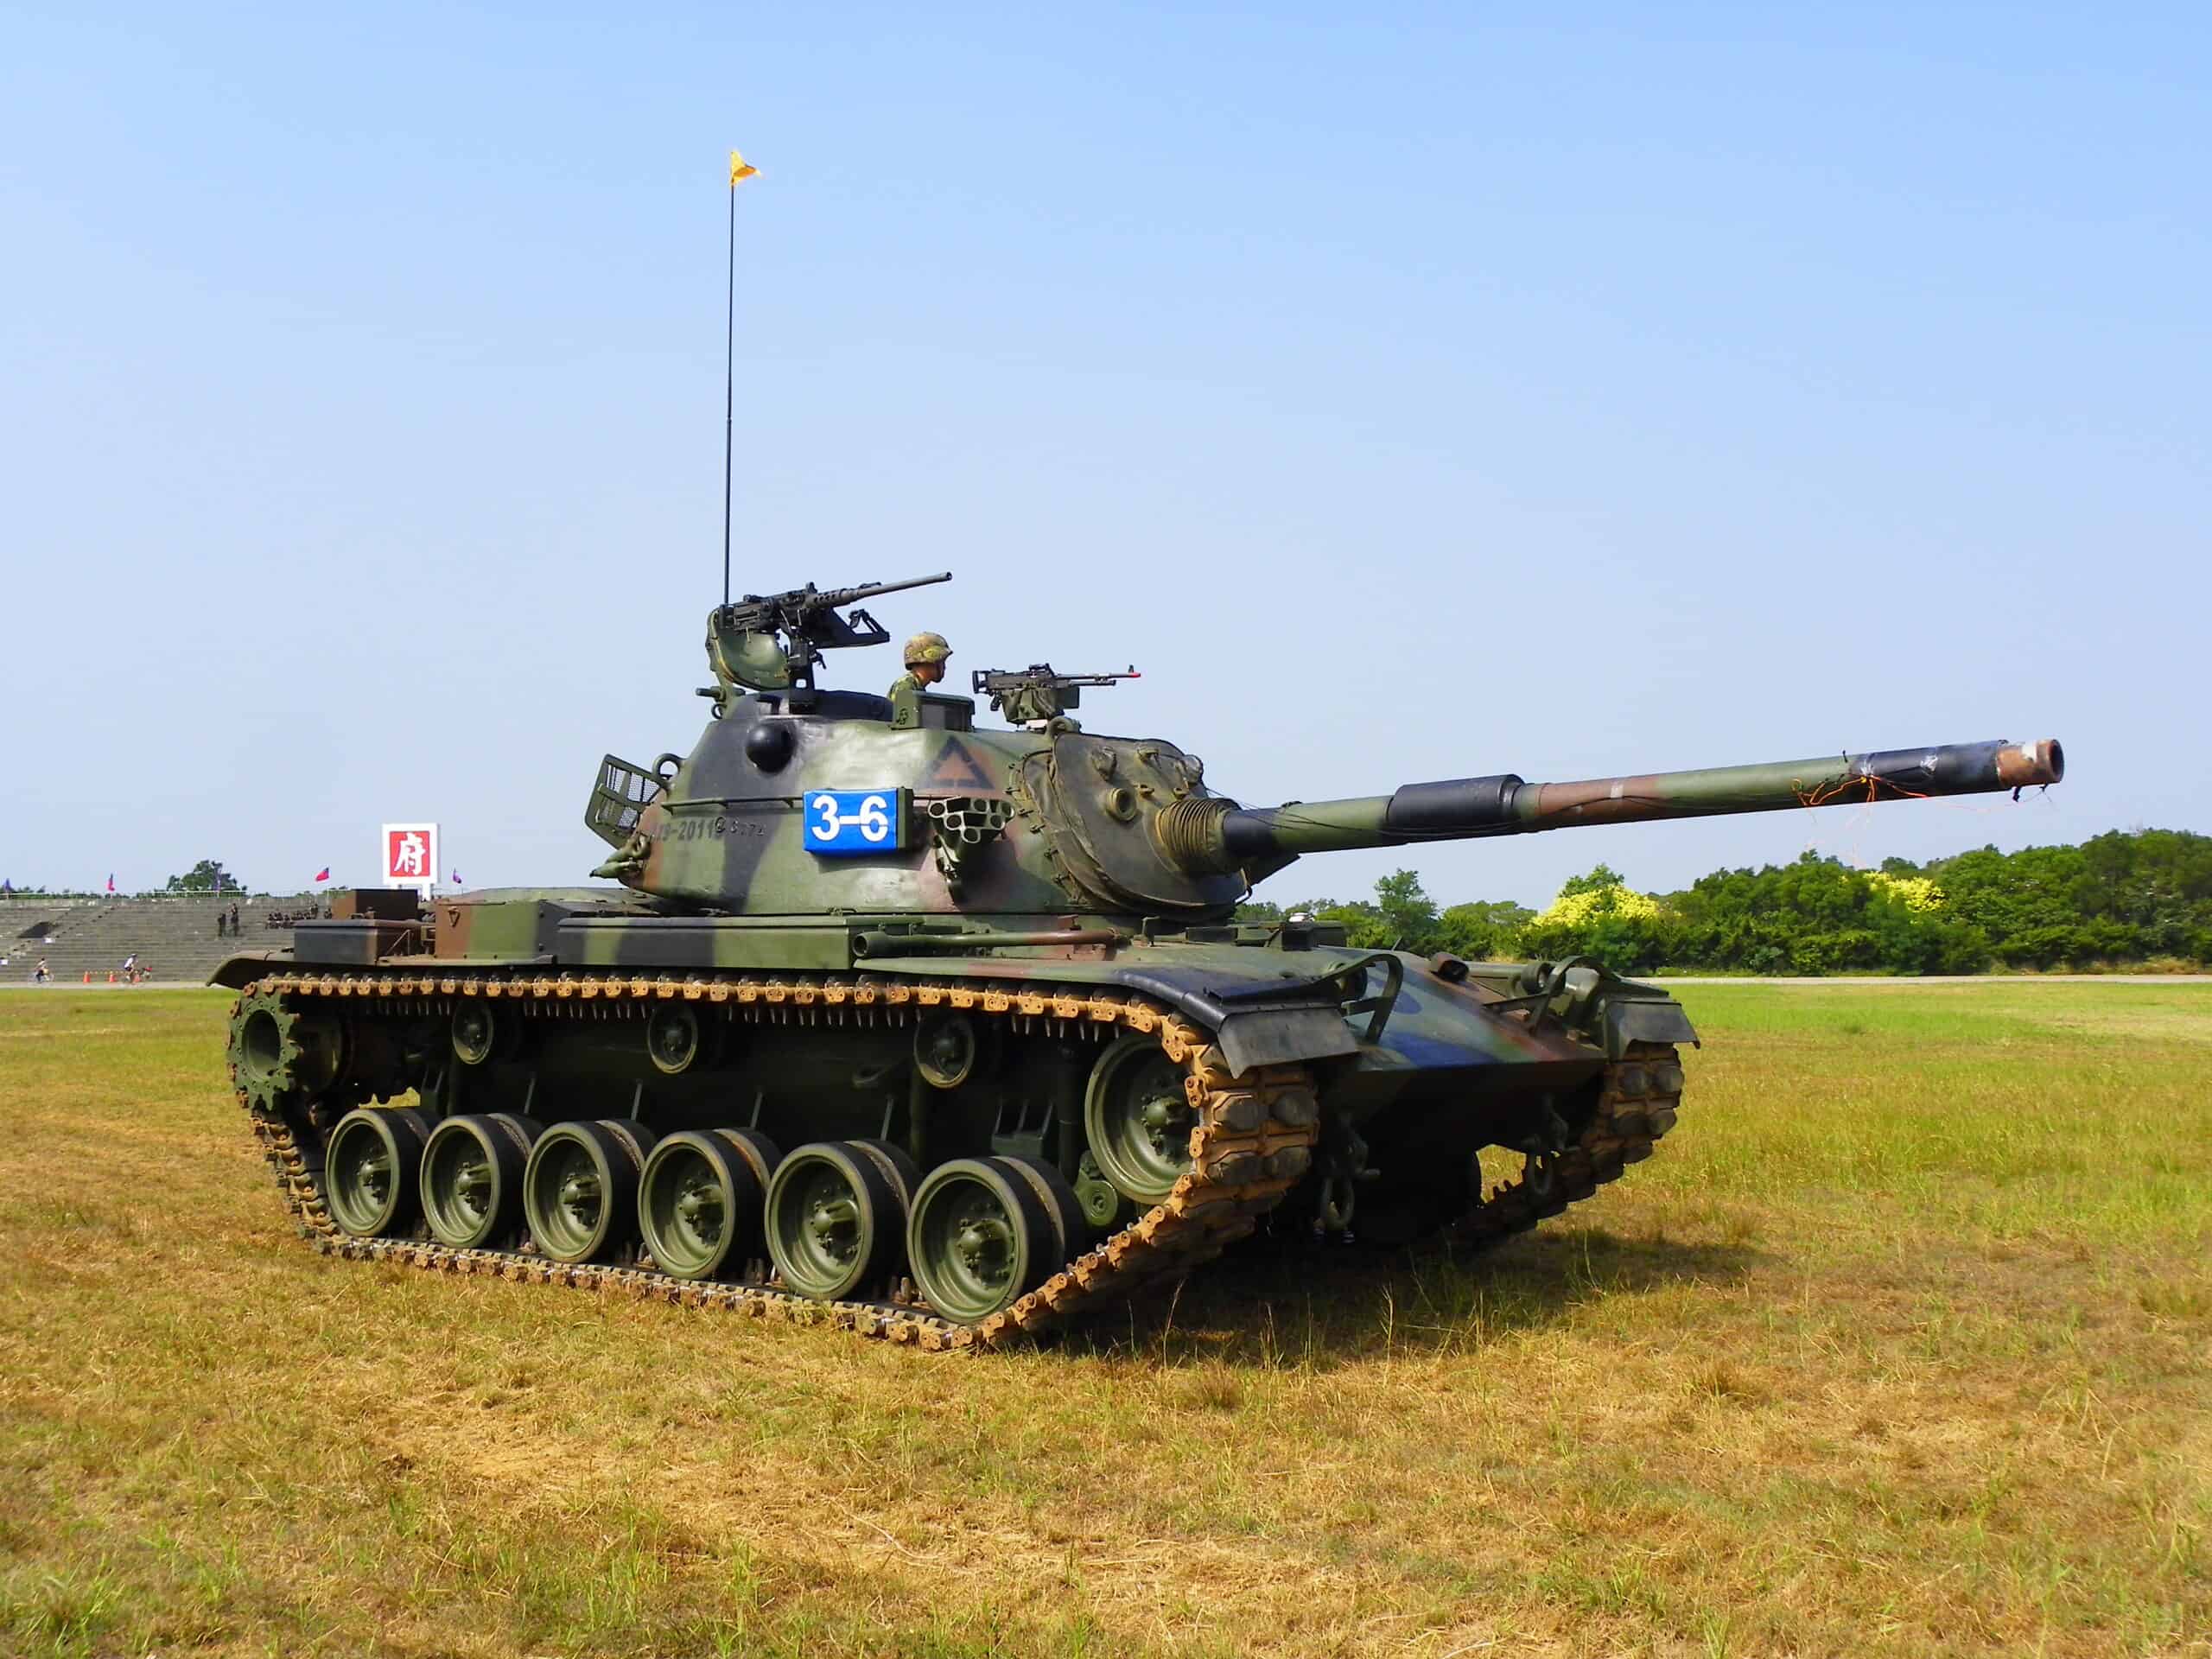 The 24-7 Tank